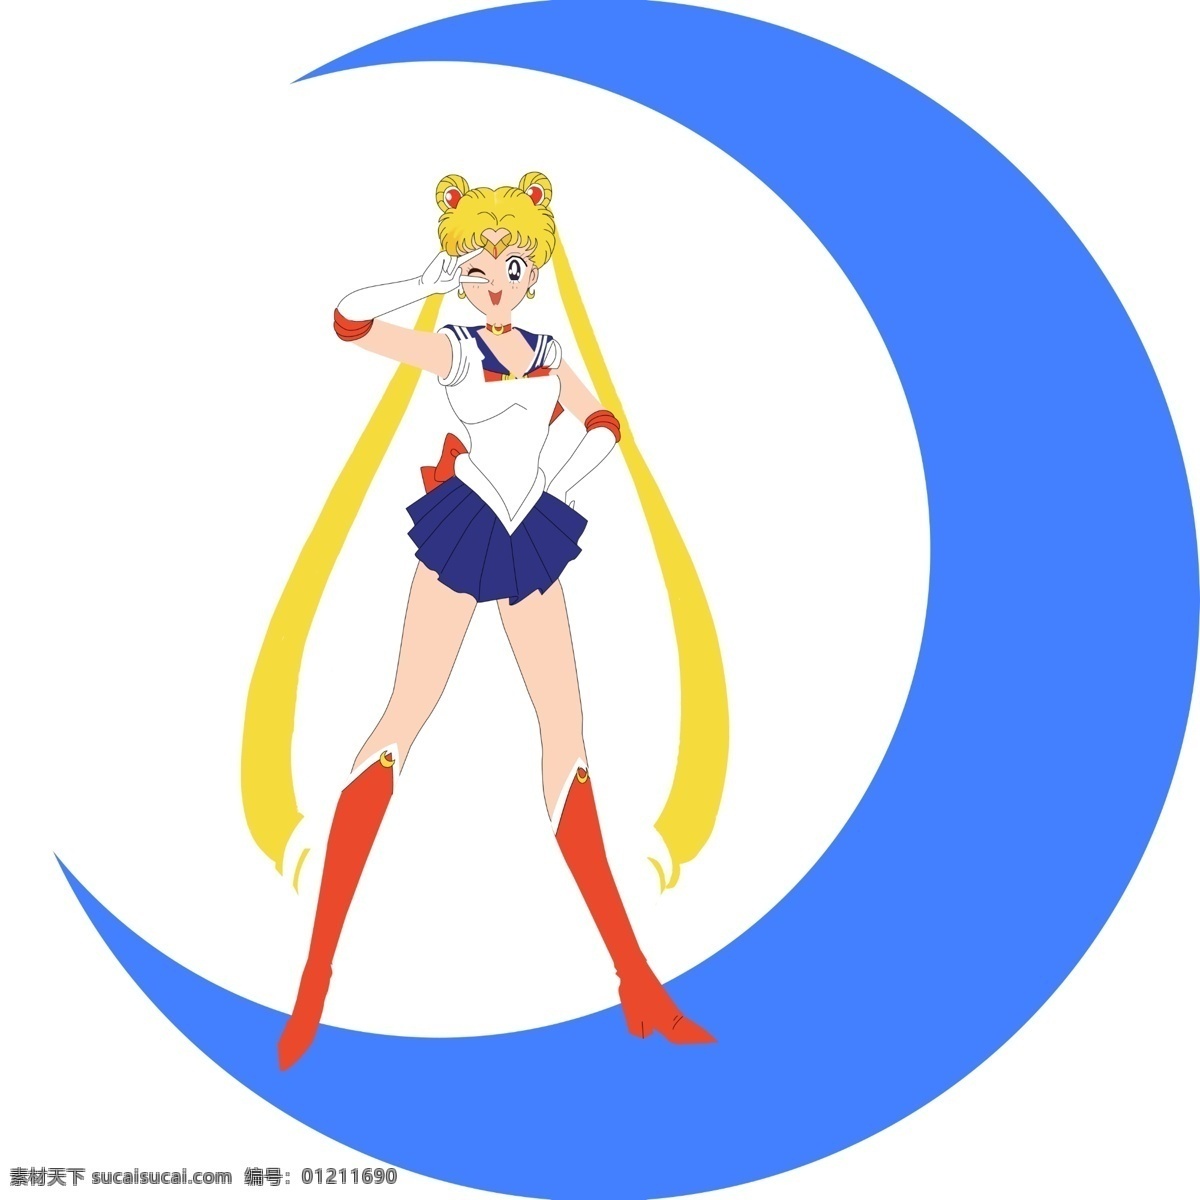 水冰月 月亮 美少女 大标示 美少女战士 动漫动画 动漫人物